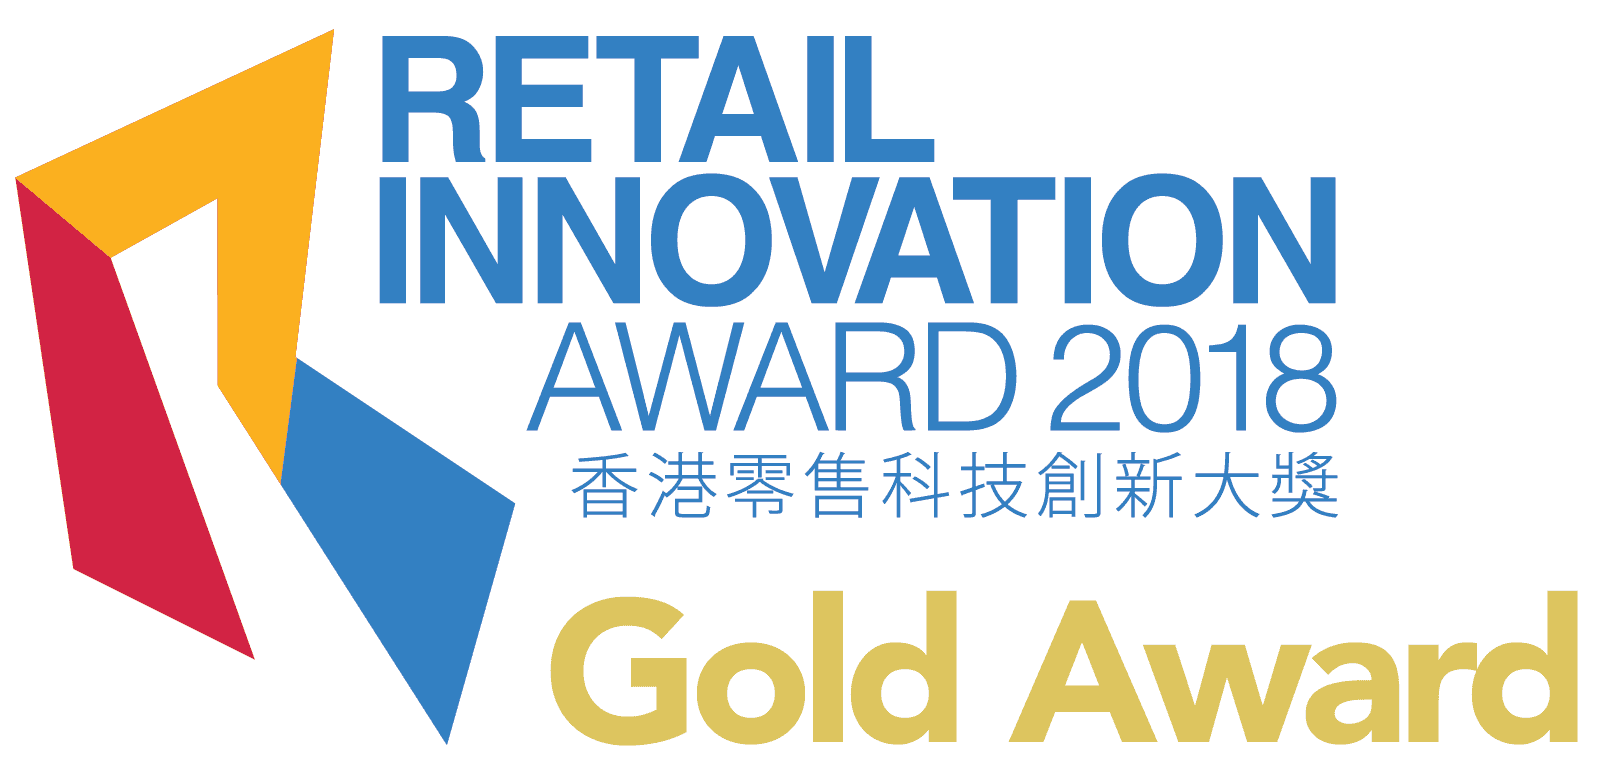 Retail Innovation Award 2018